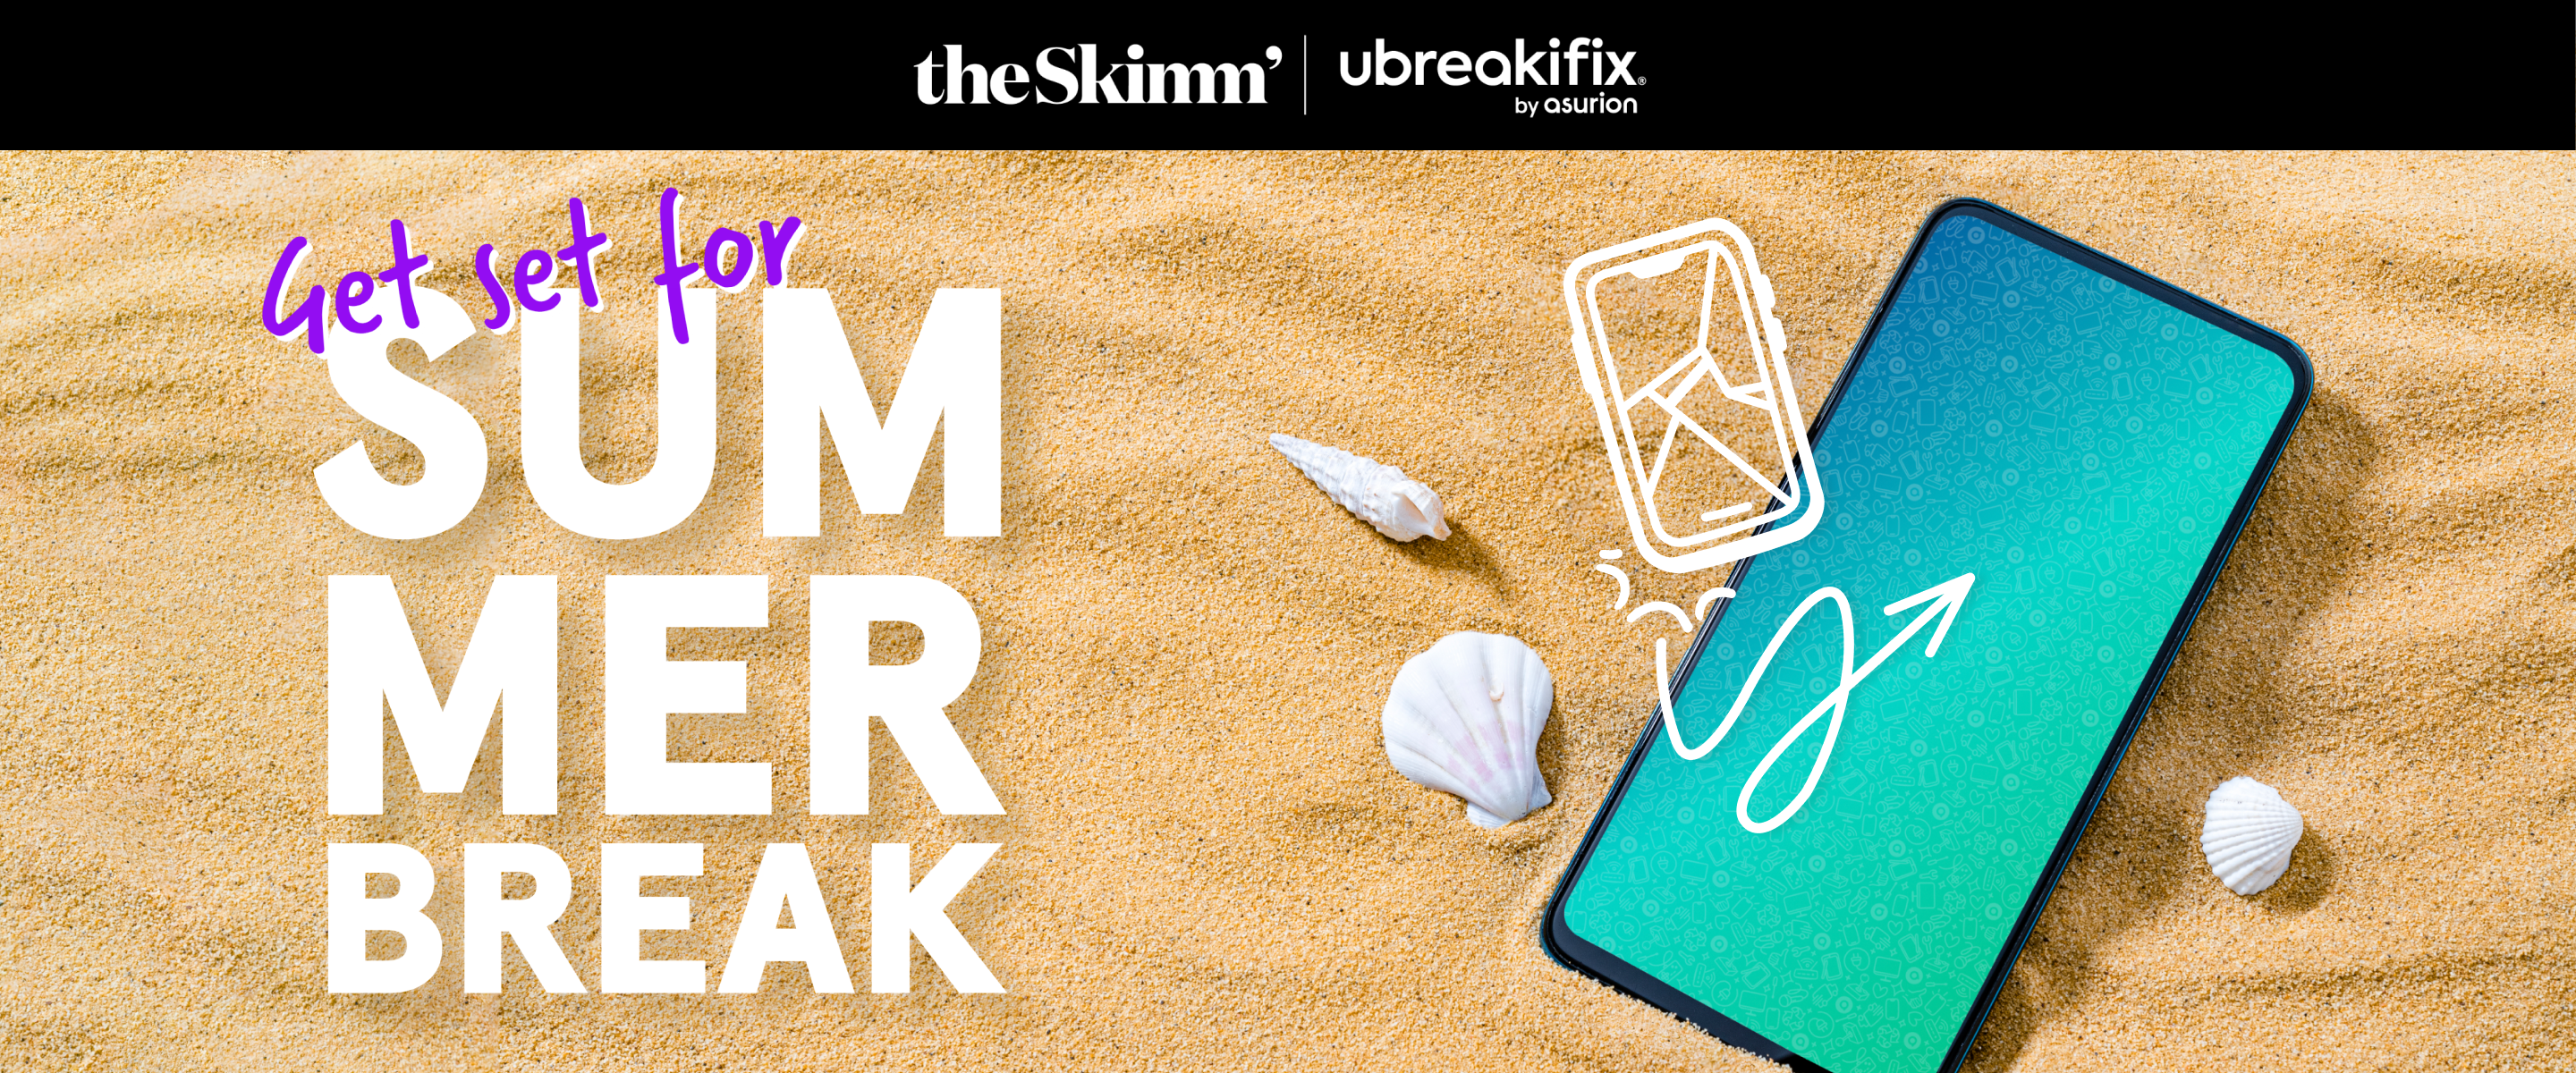 Get set for summer BREAK - theSkimm'